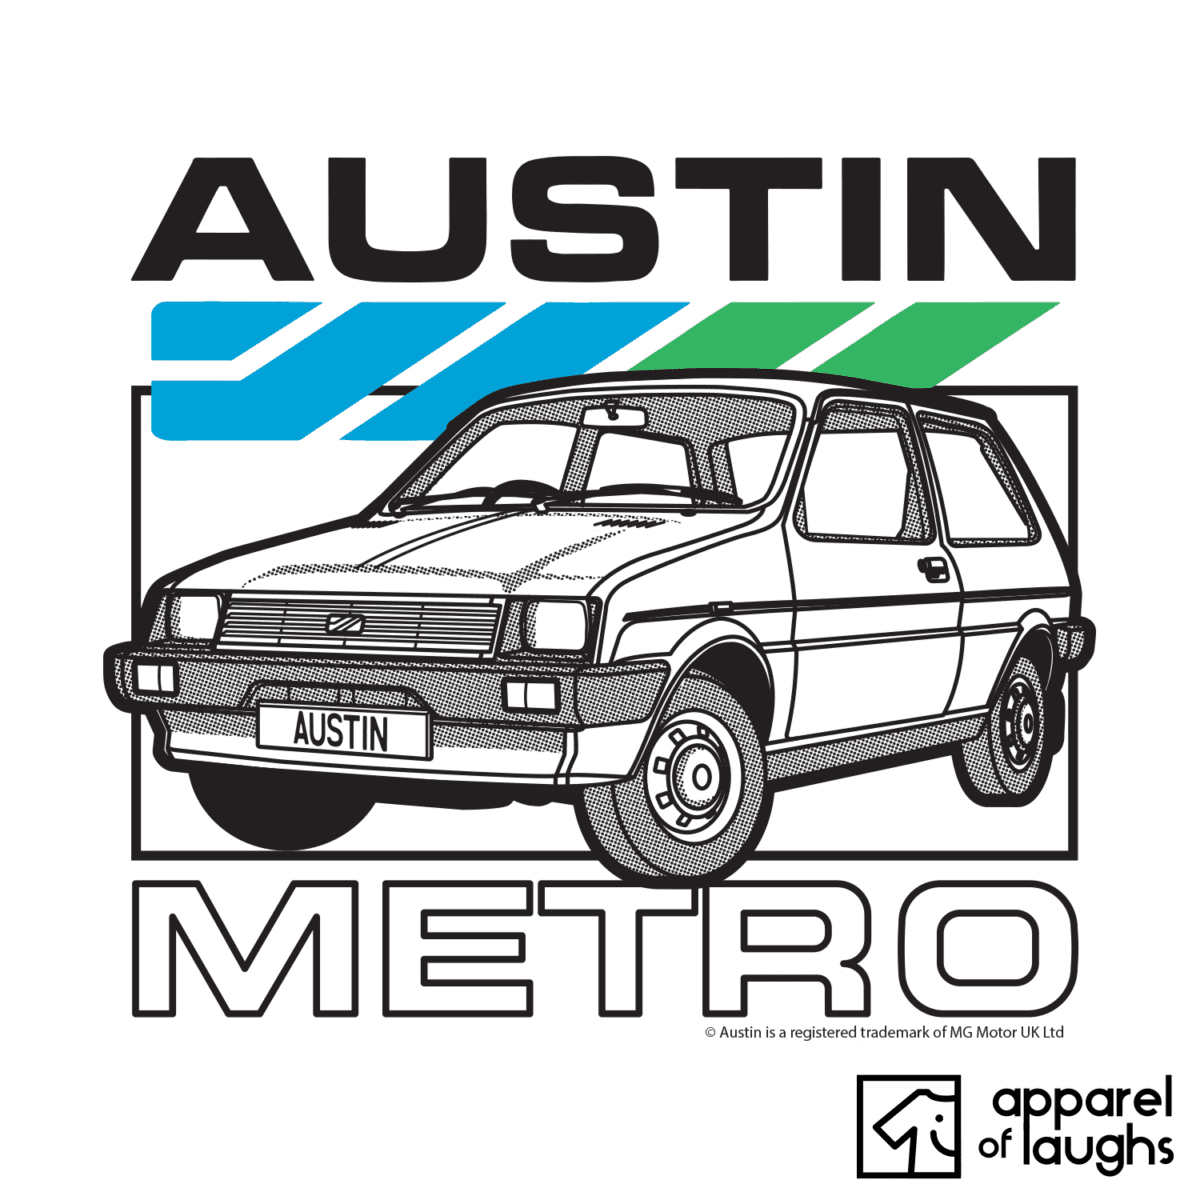 Austin Metro Car Brand Vintage Retro British Motoring Heritage T-Shirt Design White